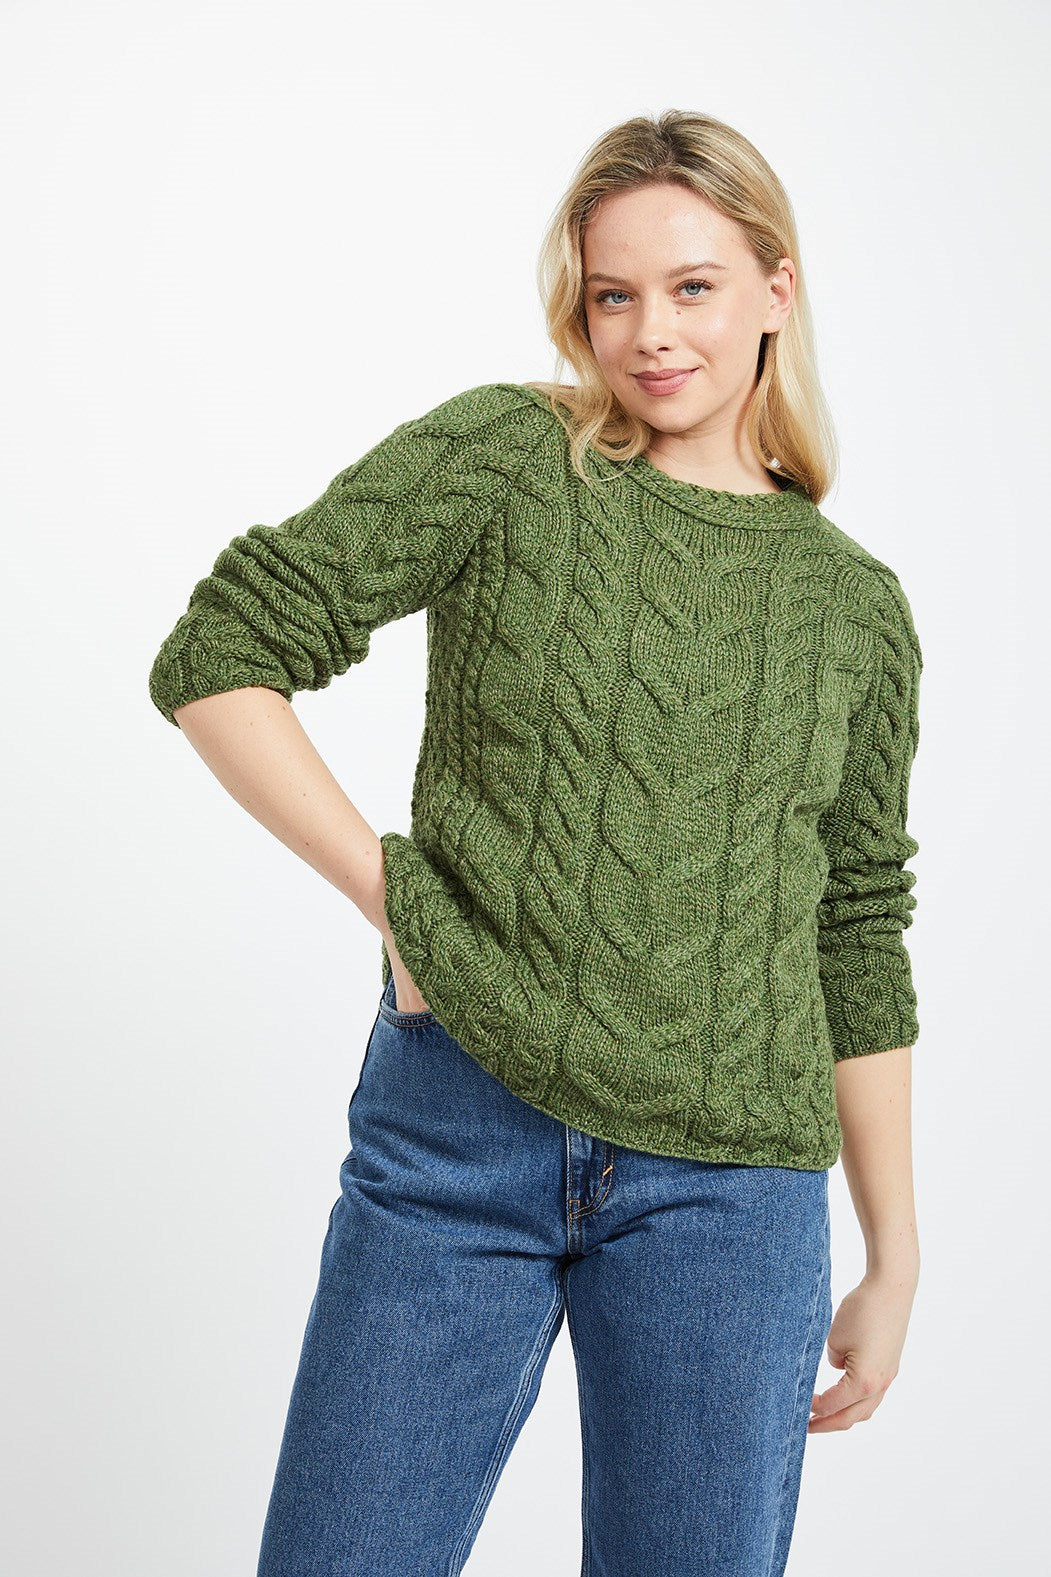 Aran Woollen Mills - B951 | women's wool sweater